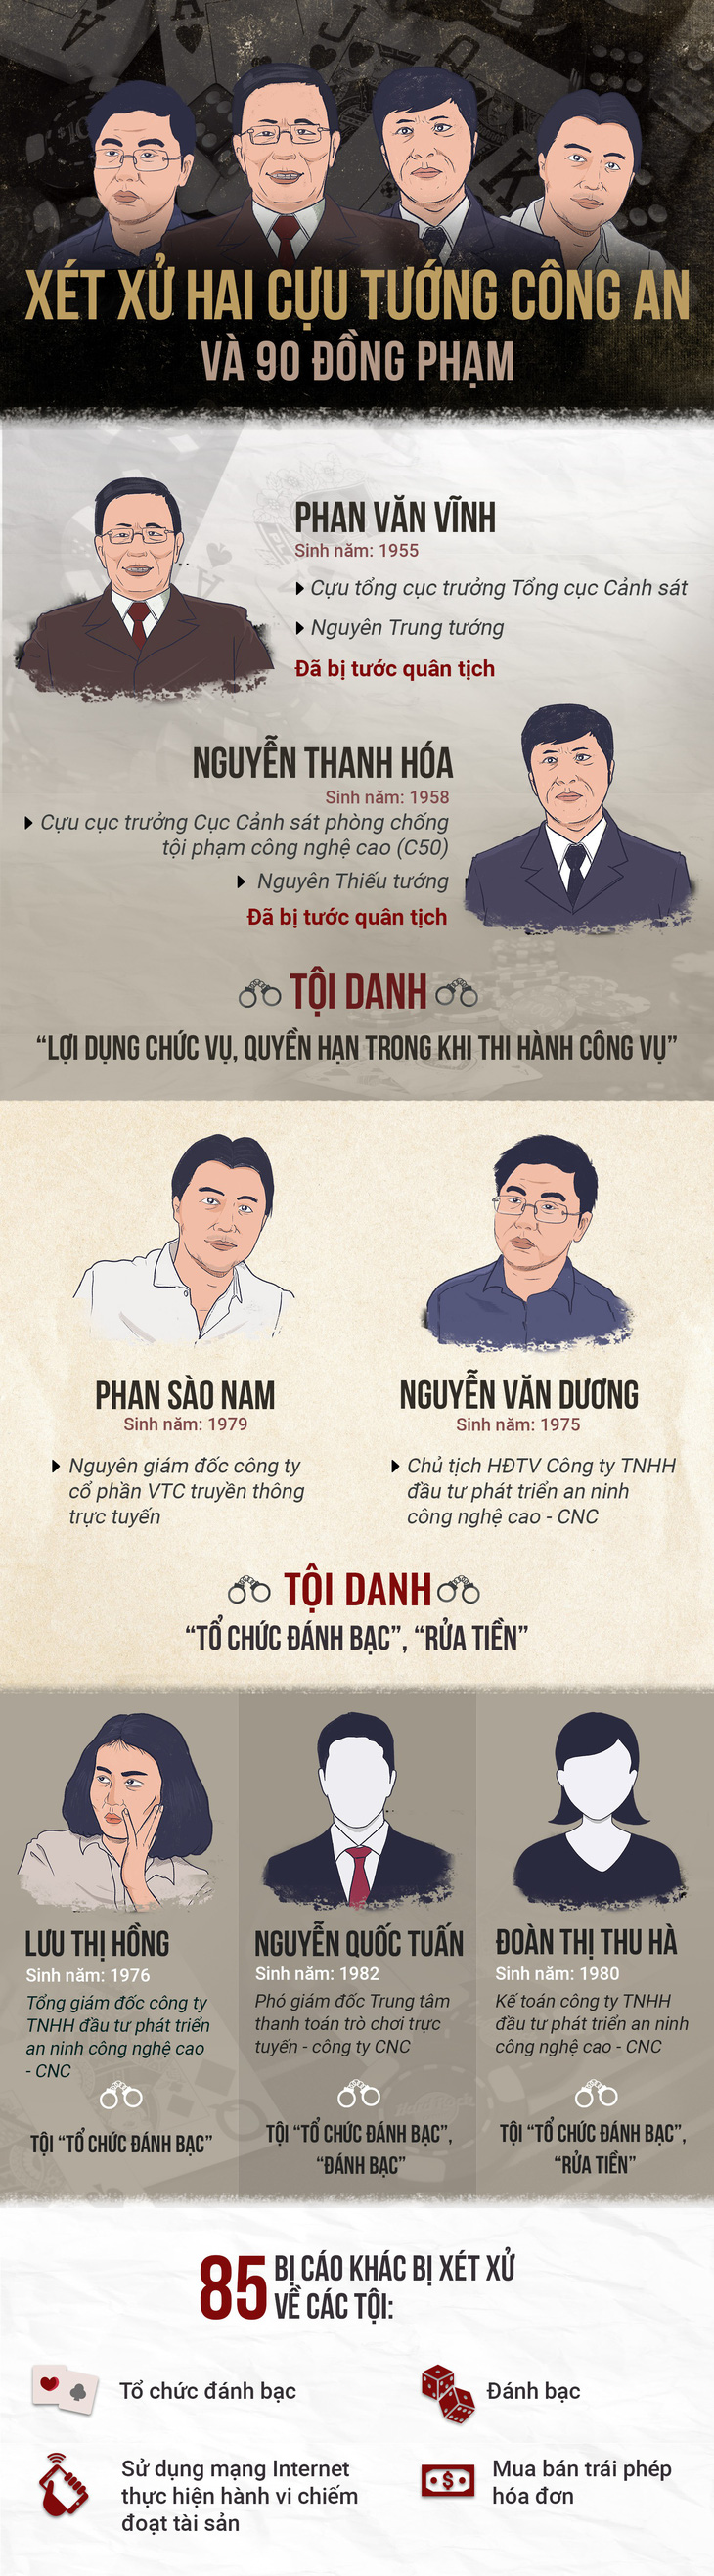 12-11 xét xử hai cựu tướng công an Phan Văn Vĩnh, Nguyễn Thanh Hóa - Ảnh 5.